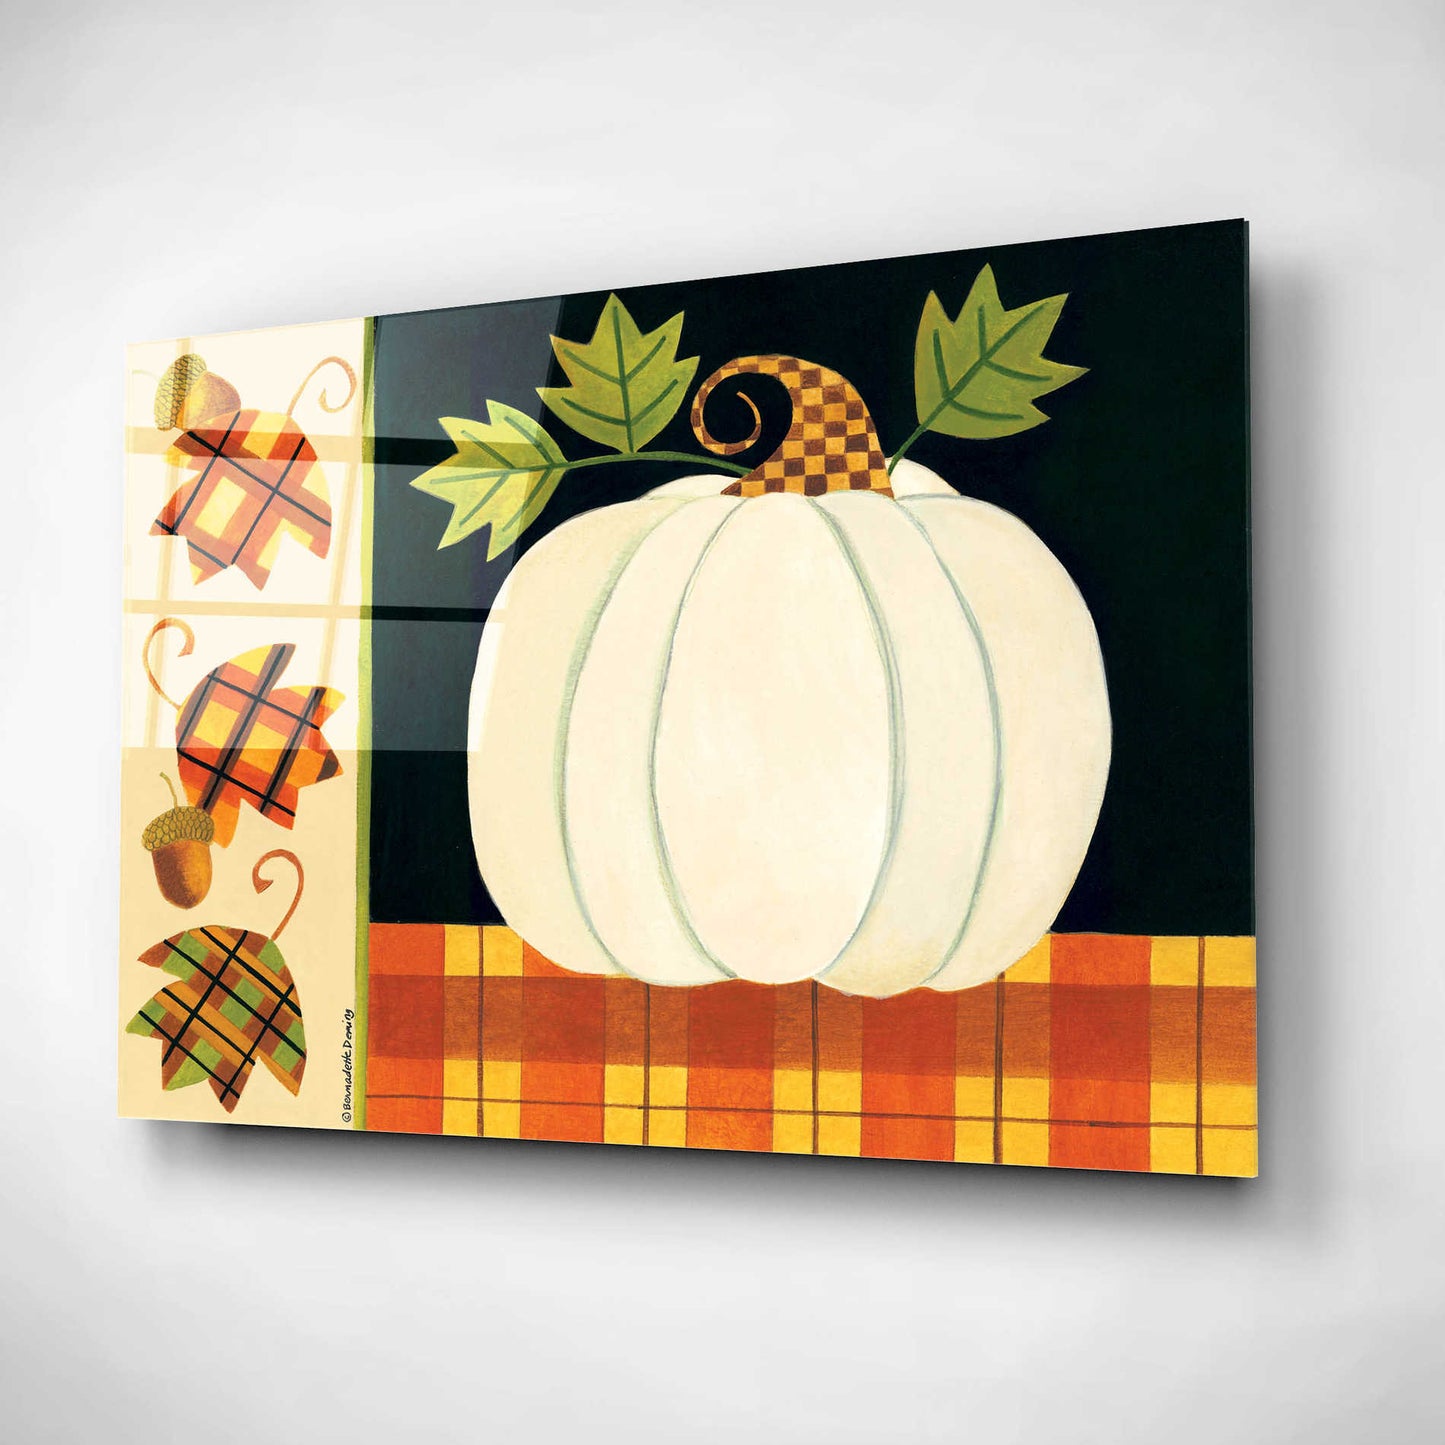 Epic Art "White Pumpkin" by Bernadette Deming, Acrylic Glass Wall Art,16x12